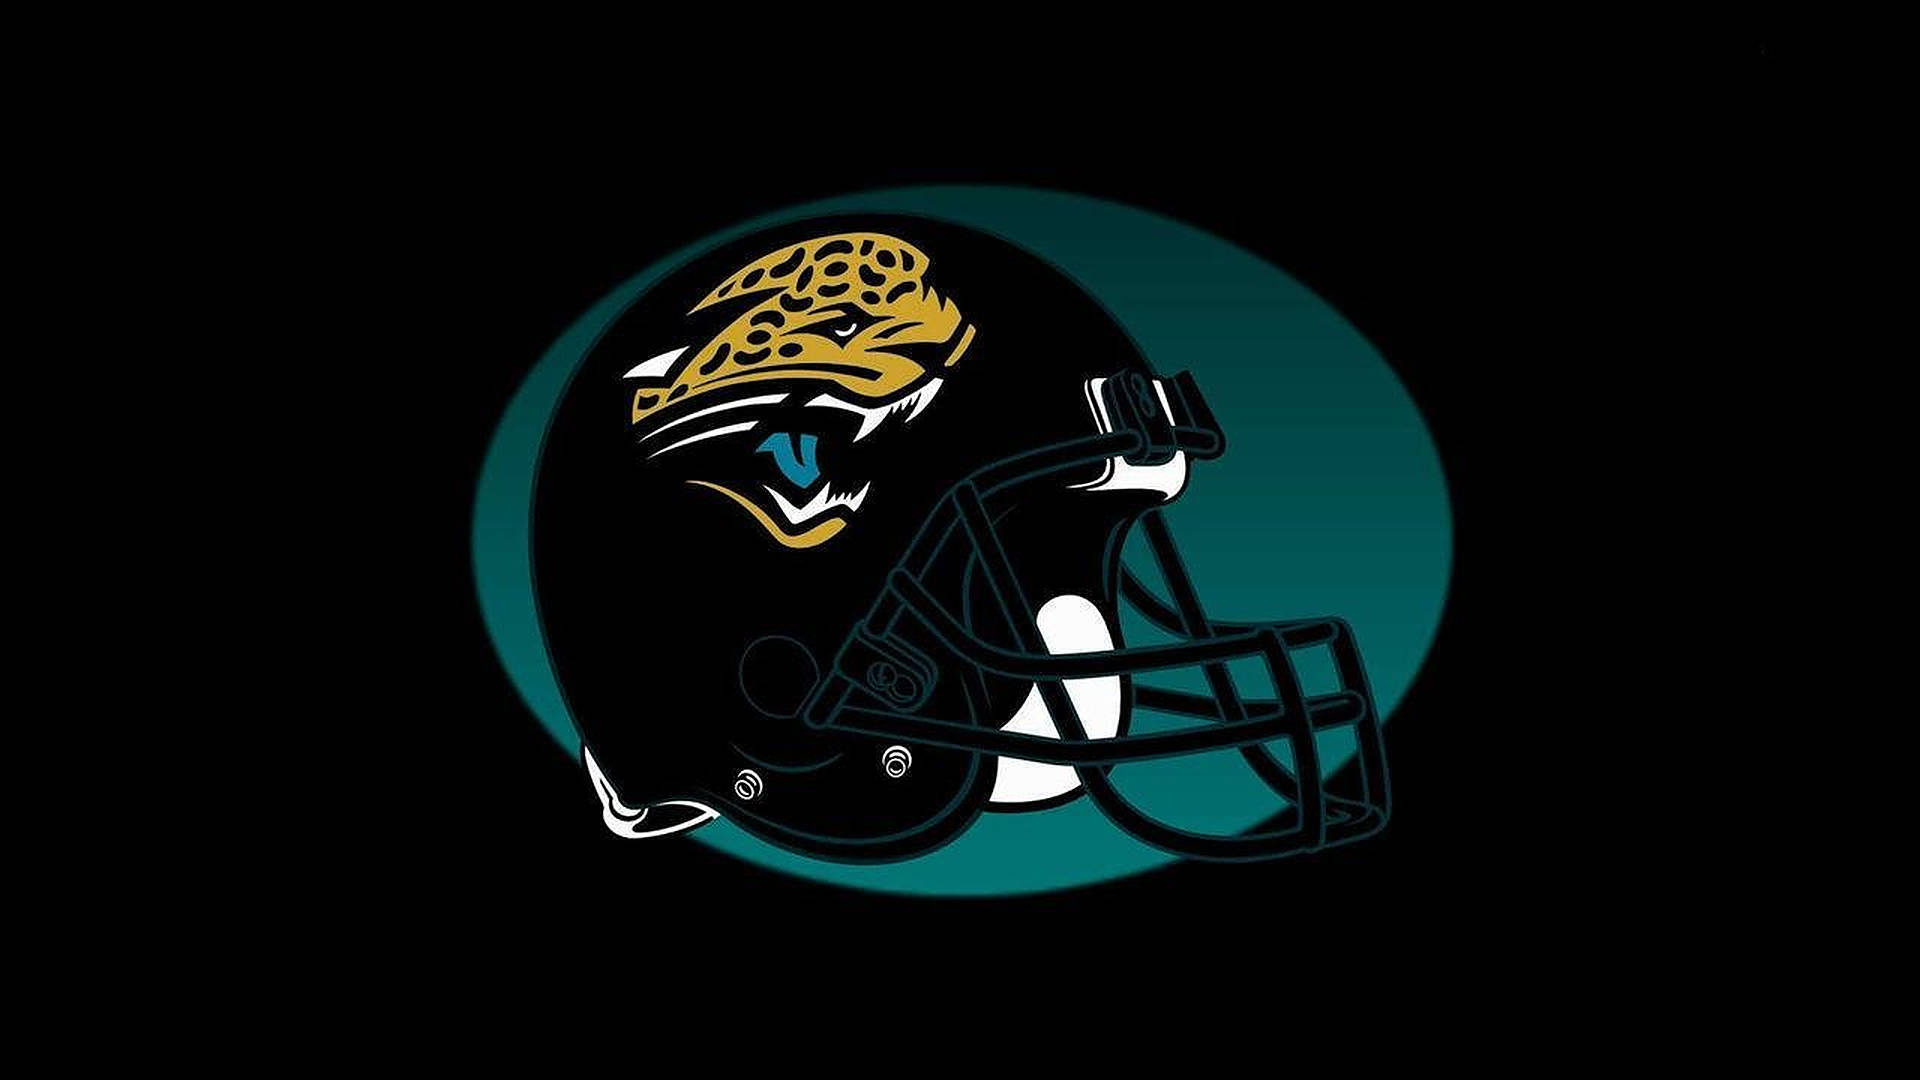 Jacksonville Jaguars Football Helmet Background